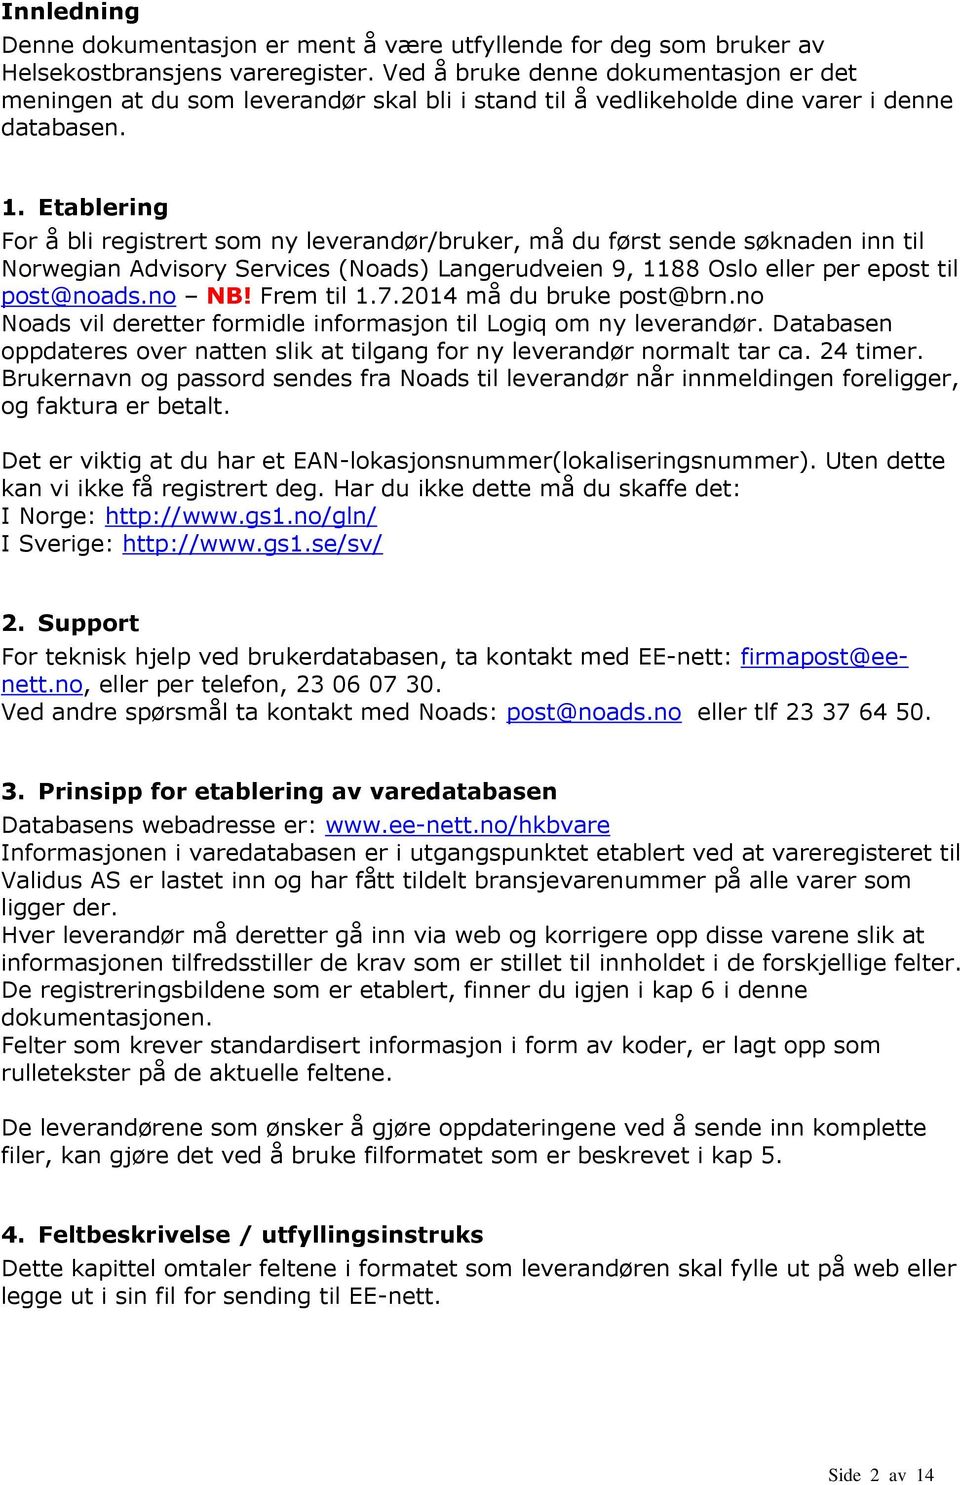 Etablering or å bli registrert som ny leverandør/bruker, må du først sende søknaden inn til Norwegian Advisory Services (Noads) Langerudveien 9, 1188 Oslo eller per epost til post@noads.no NB!